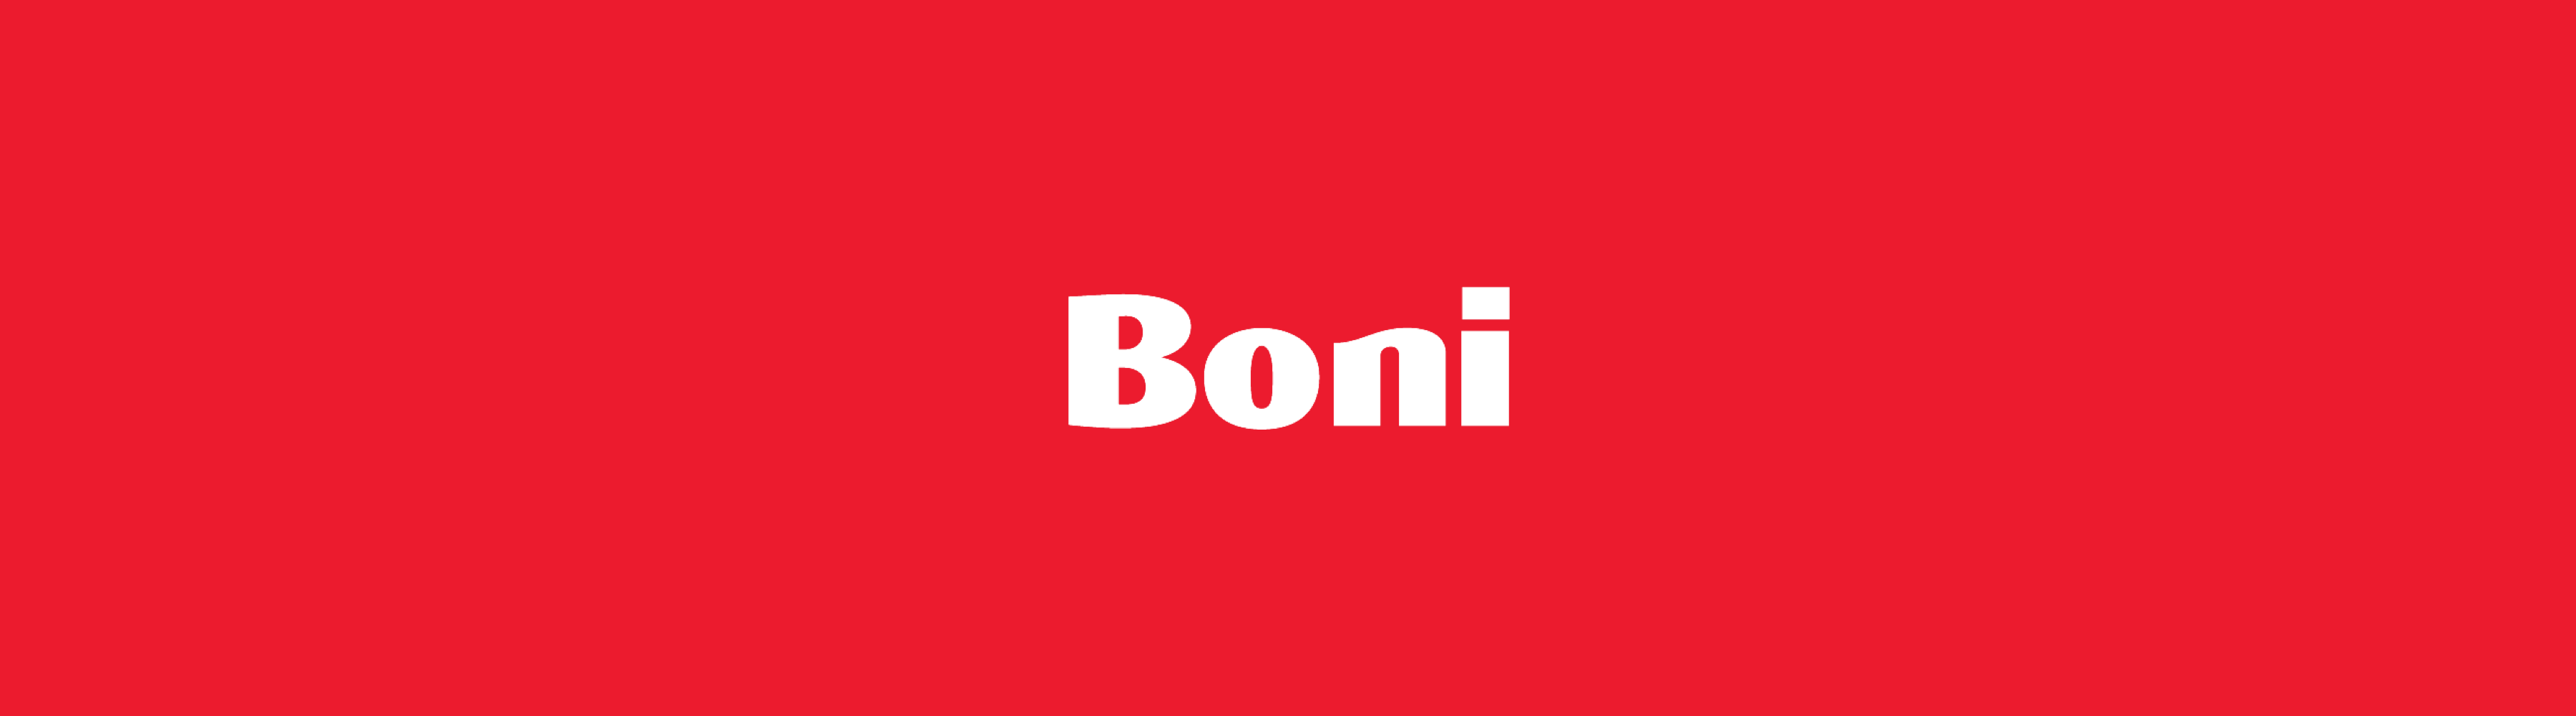 Afslagzuid maakt nieuwe campagne voor Boni